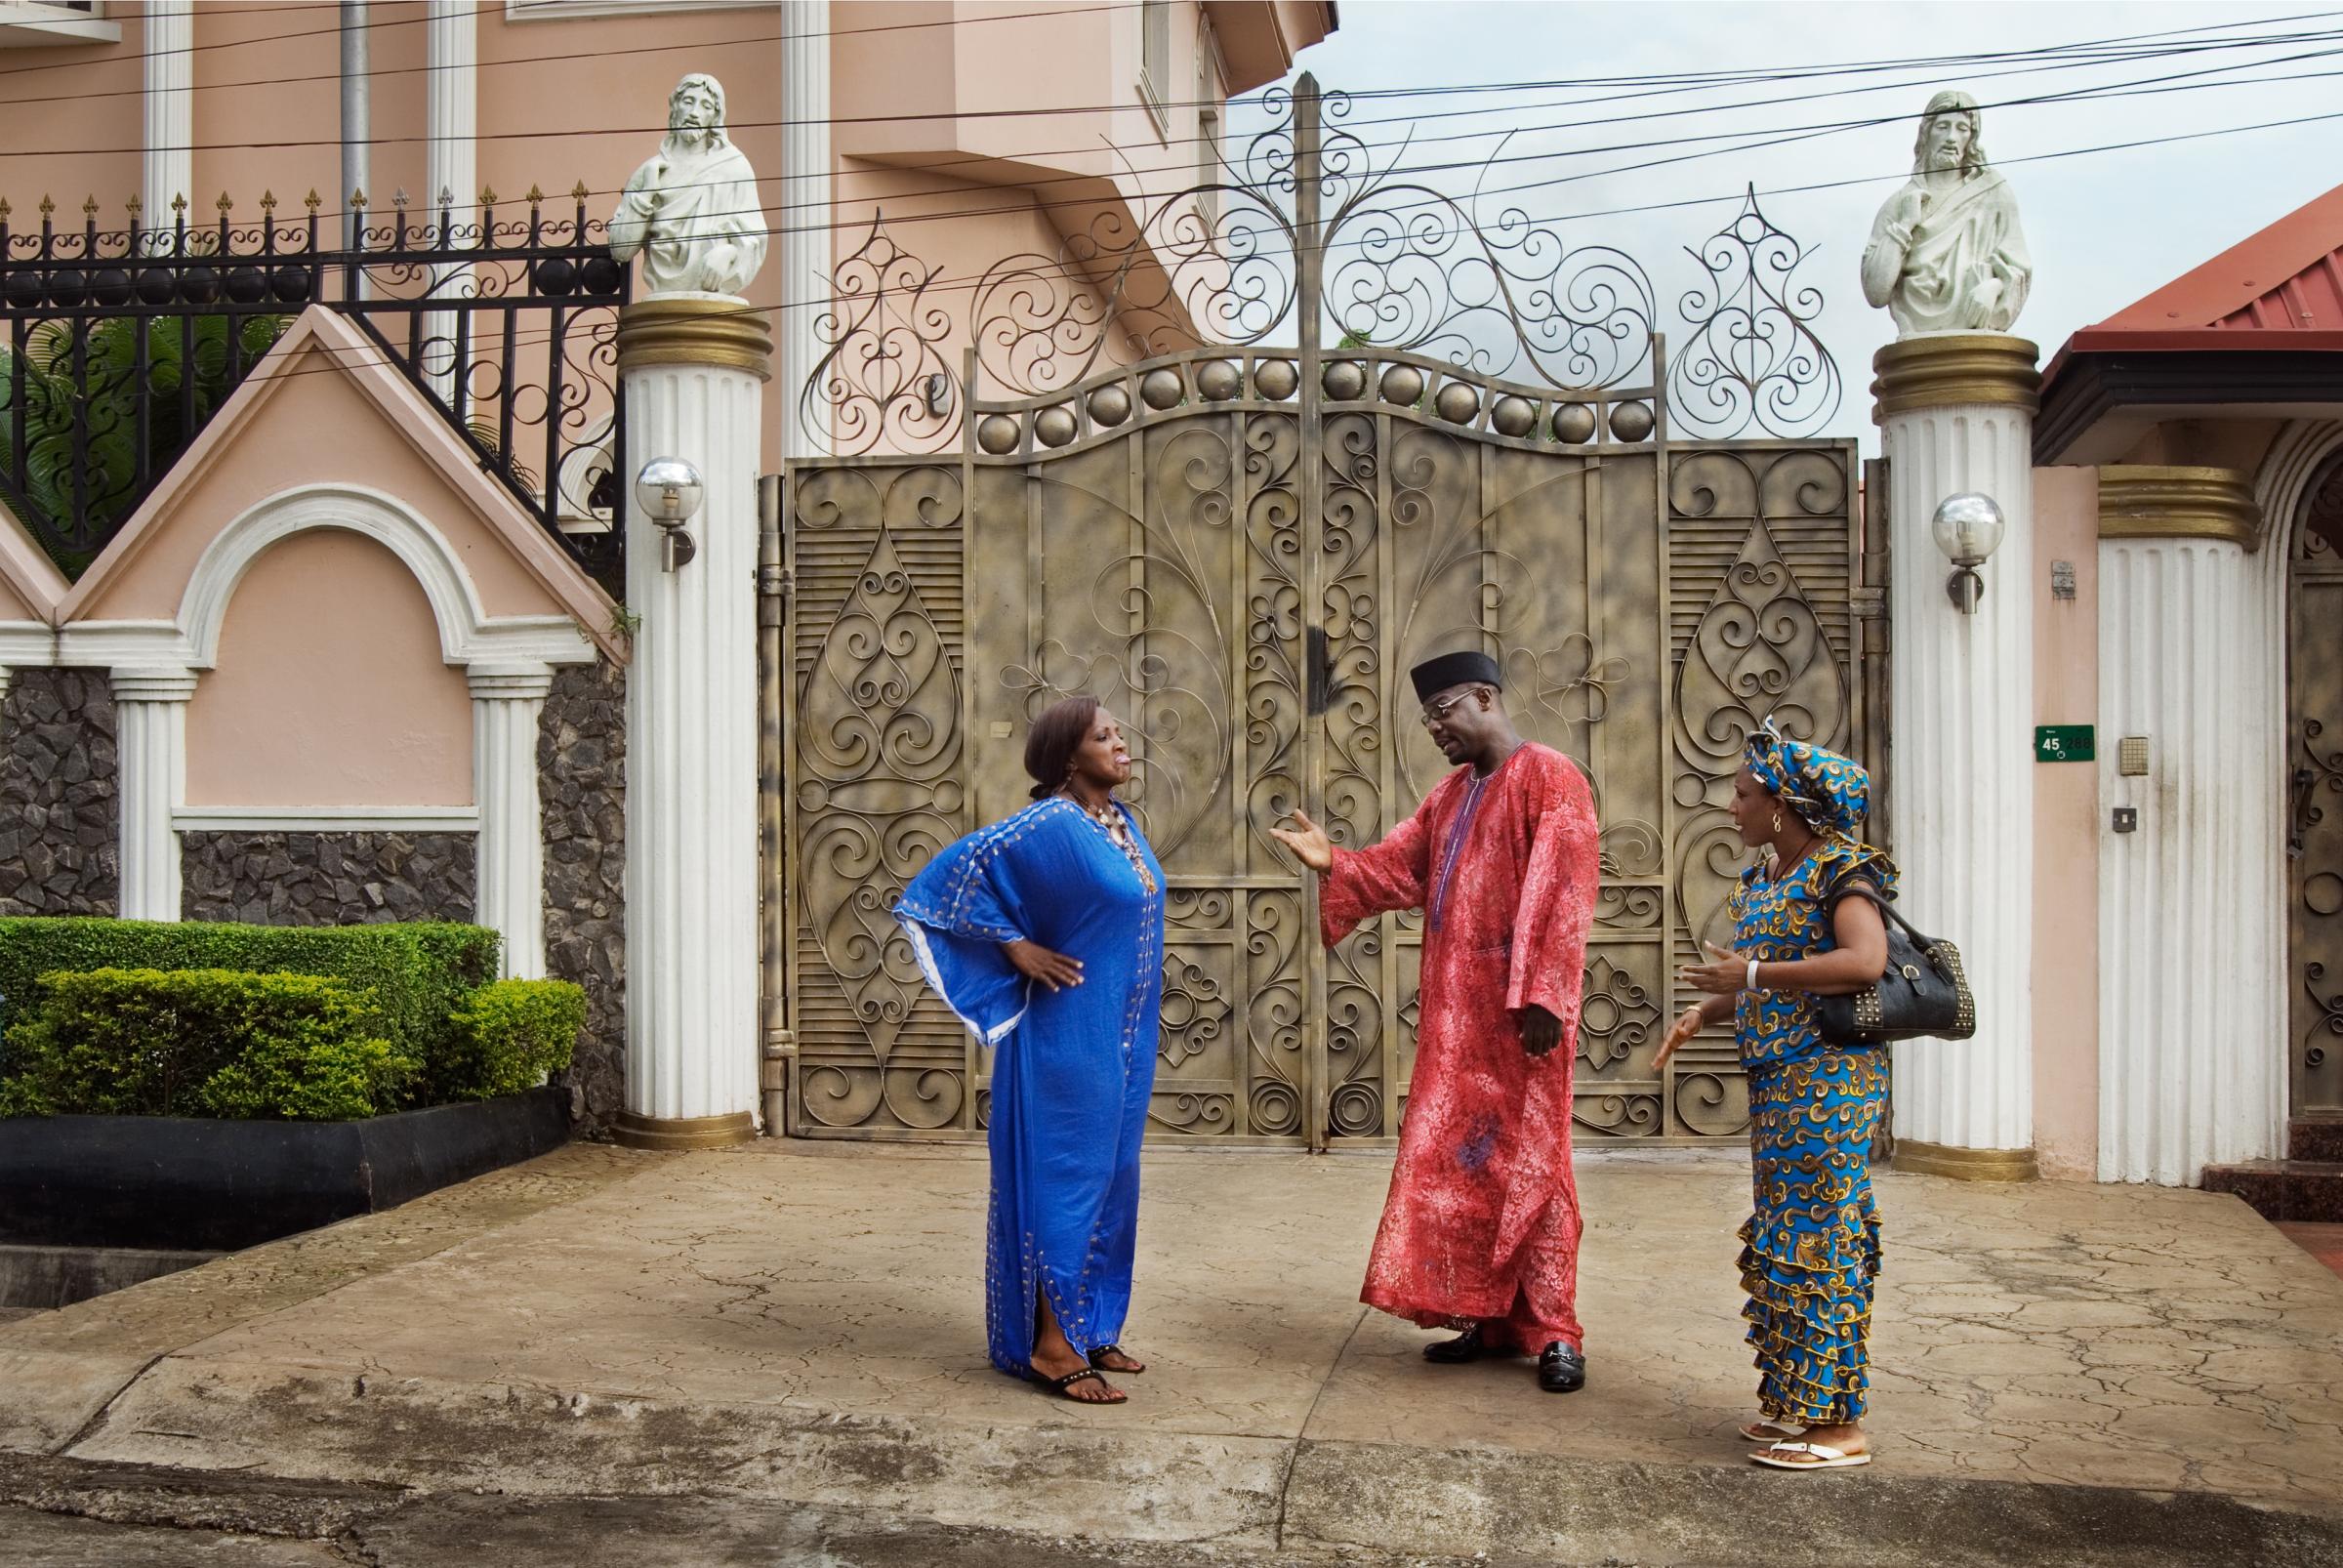 Nollywood: Cinema of Nigeria